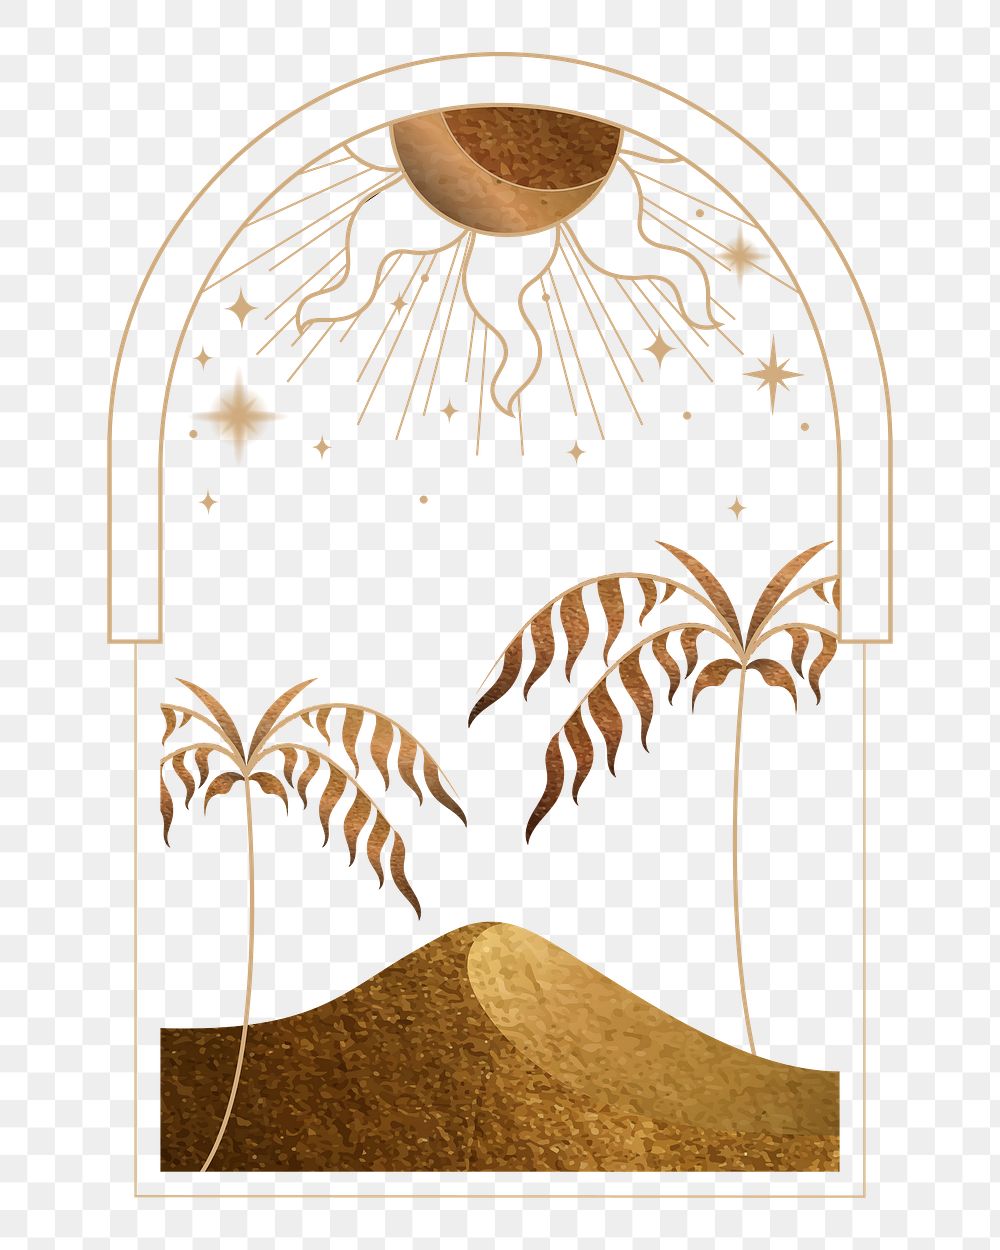 Gold mystical illustration png, transparent background